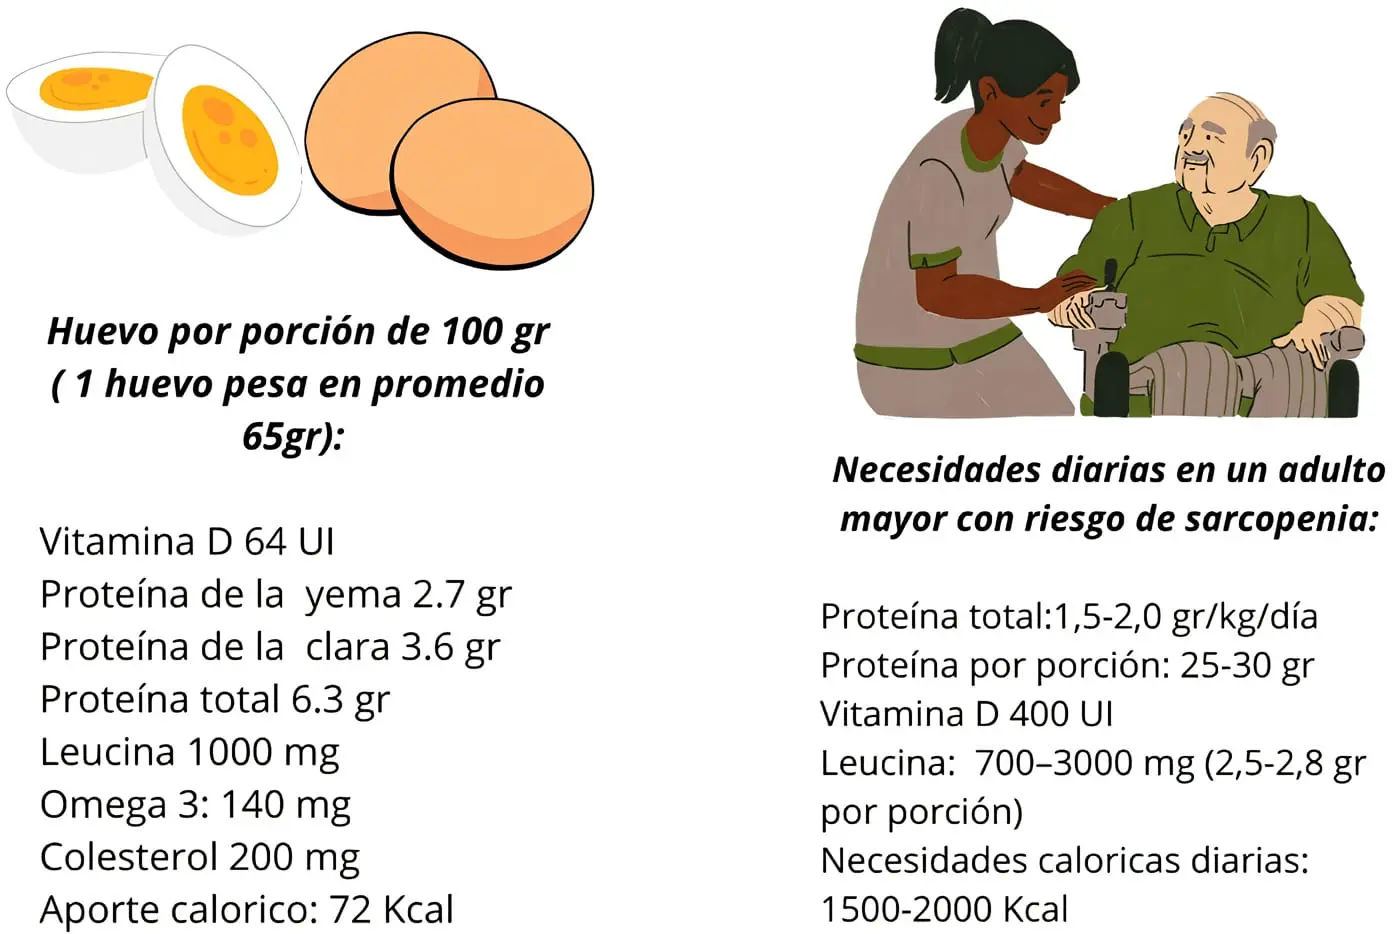 Figura 2. Comparativo entre el aporte nutricional de una porción de 100 g de huevo frente a las necesidades nutricionales de un adulto con riesgo de sarcopenia